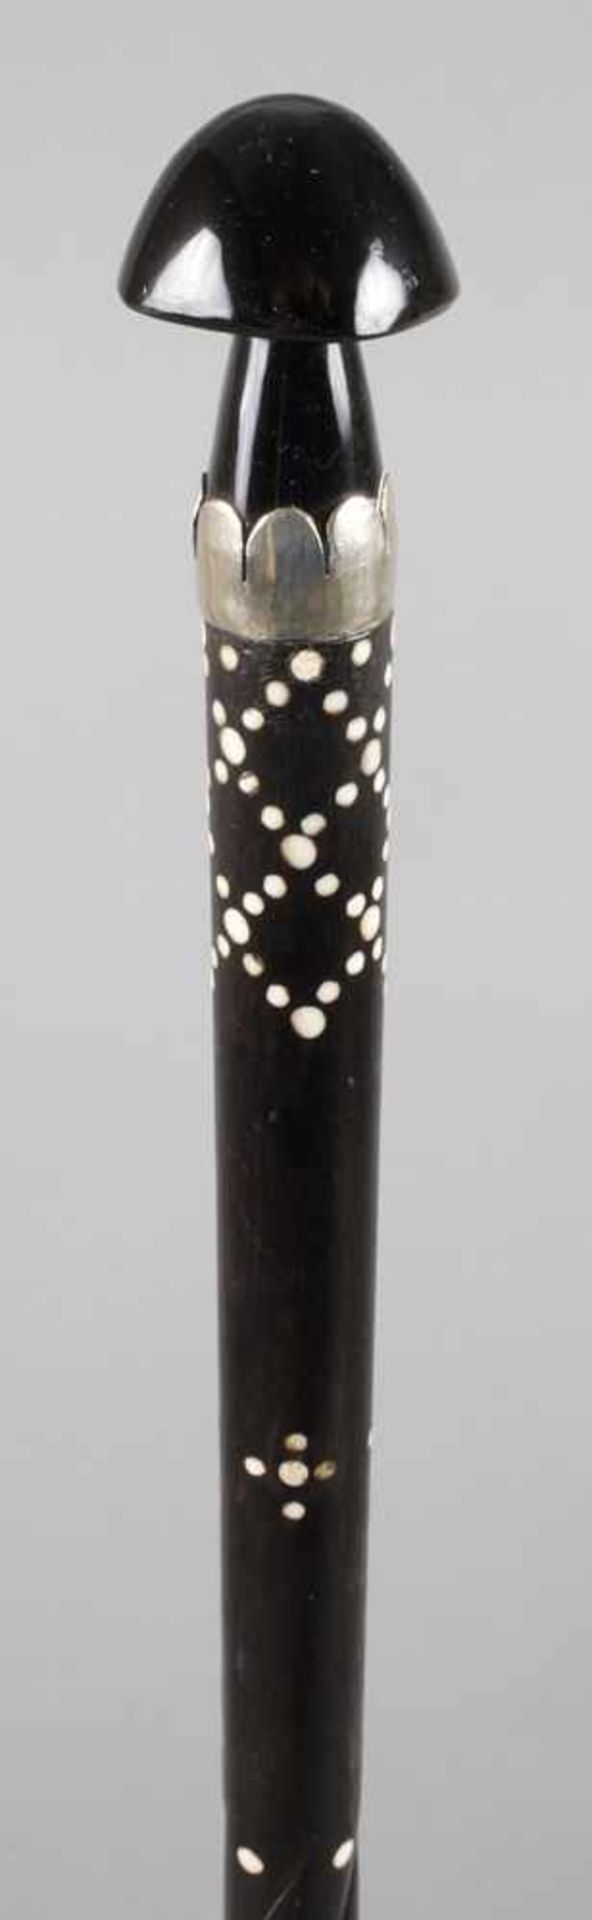 Spazierstock Hornum 1890, ungewöhnlicher Knauf in Form eines Pilzes aus dunklem Horn gefertigt,